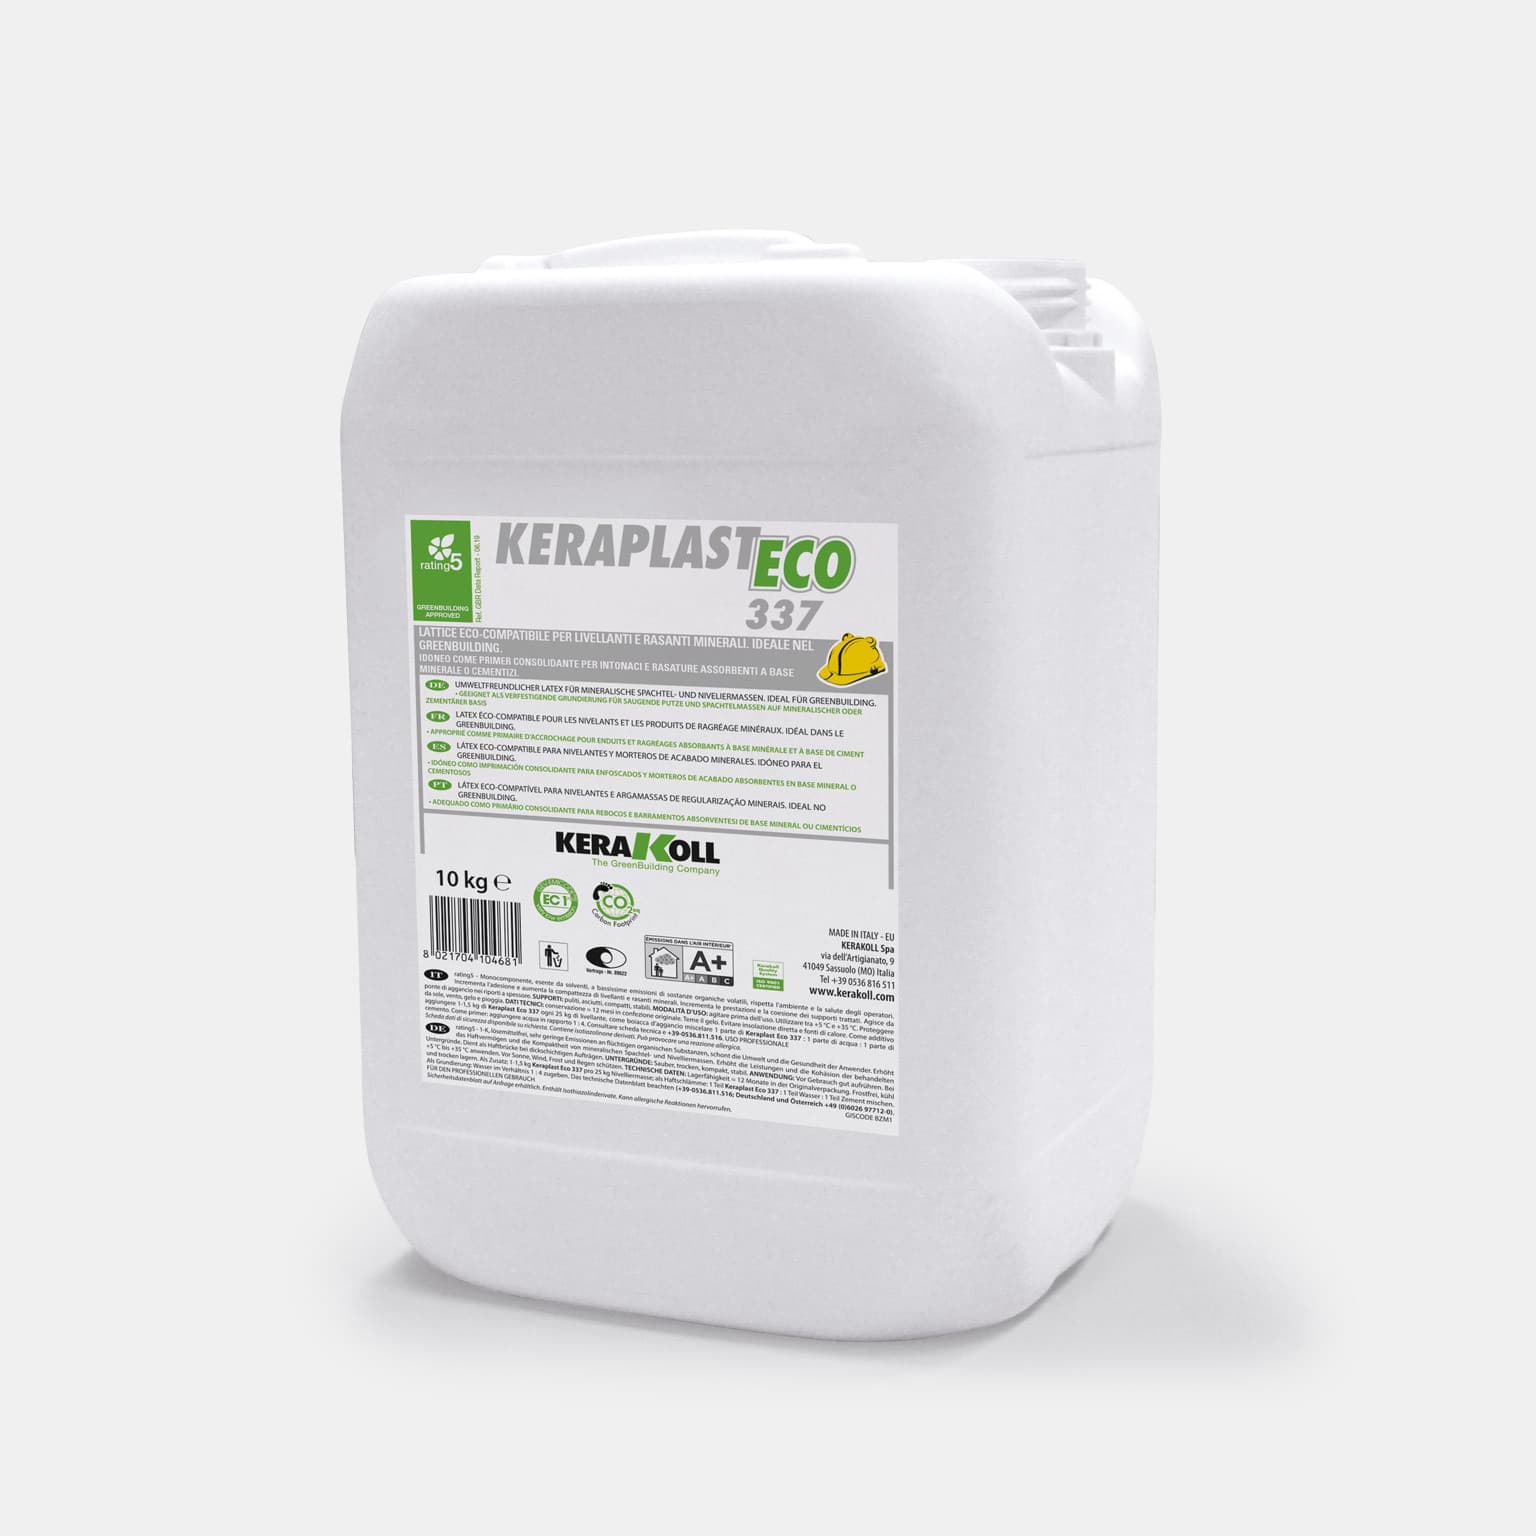 Kerakoll Keraplast Eco 337: Öko-kompatibilis, vizes alapú latex normál és gyors kötésidejű ásványi alapú aljzatkiegyenlítőkhöz és simítókhoz.